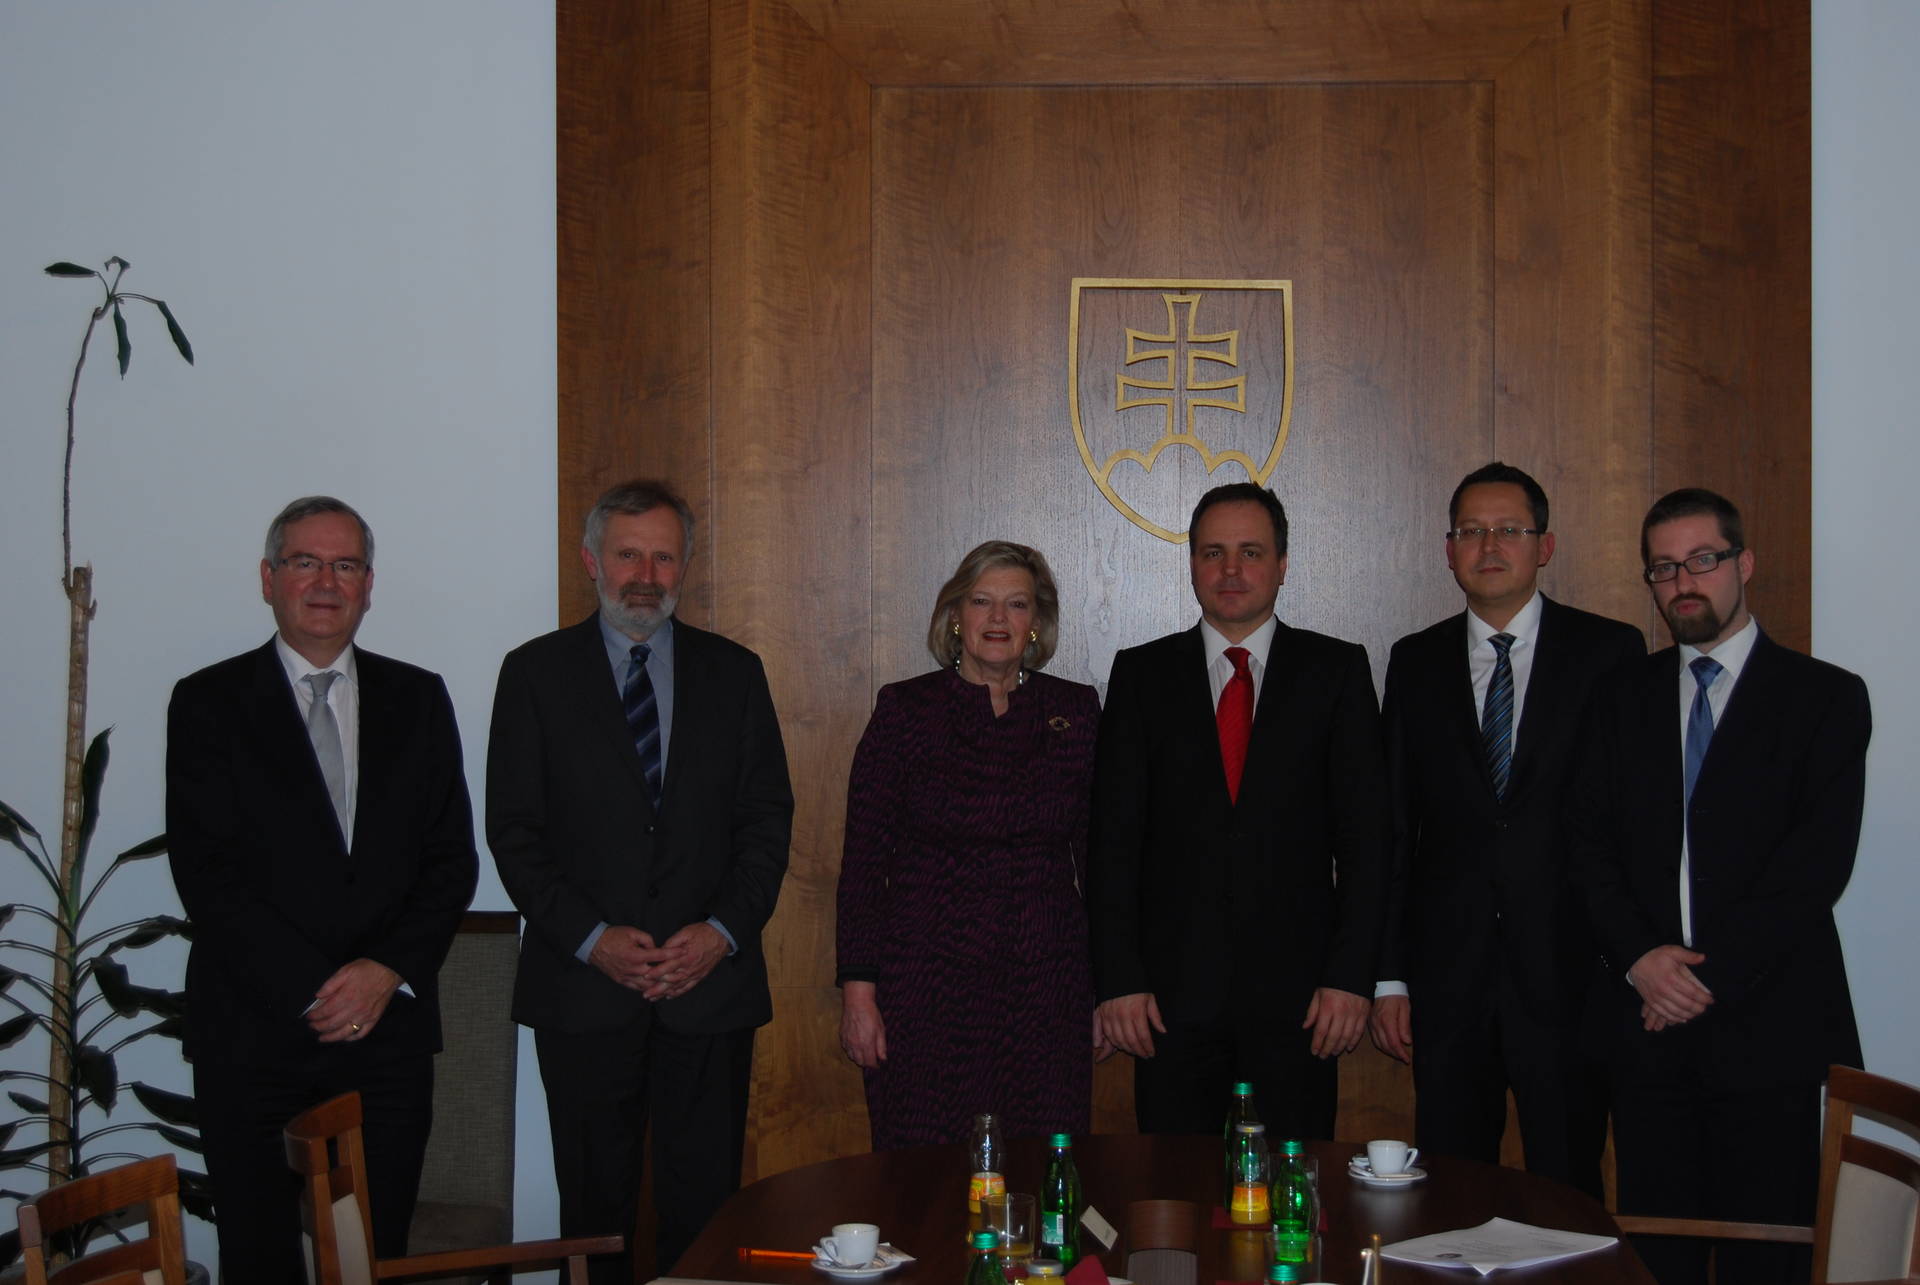 Ontmoeting met Parlementsleden van de vriendschapsgroep Slowakije-Benelux